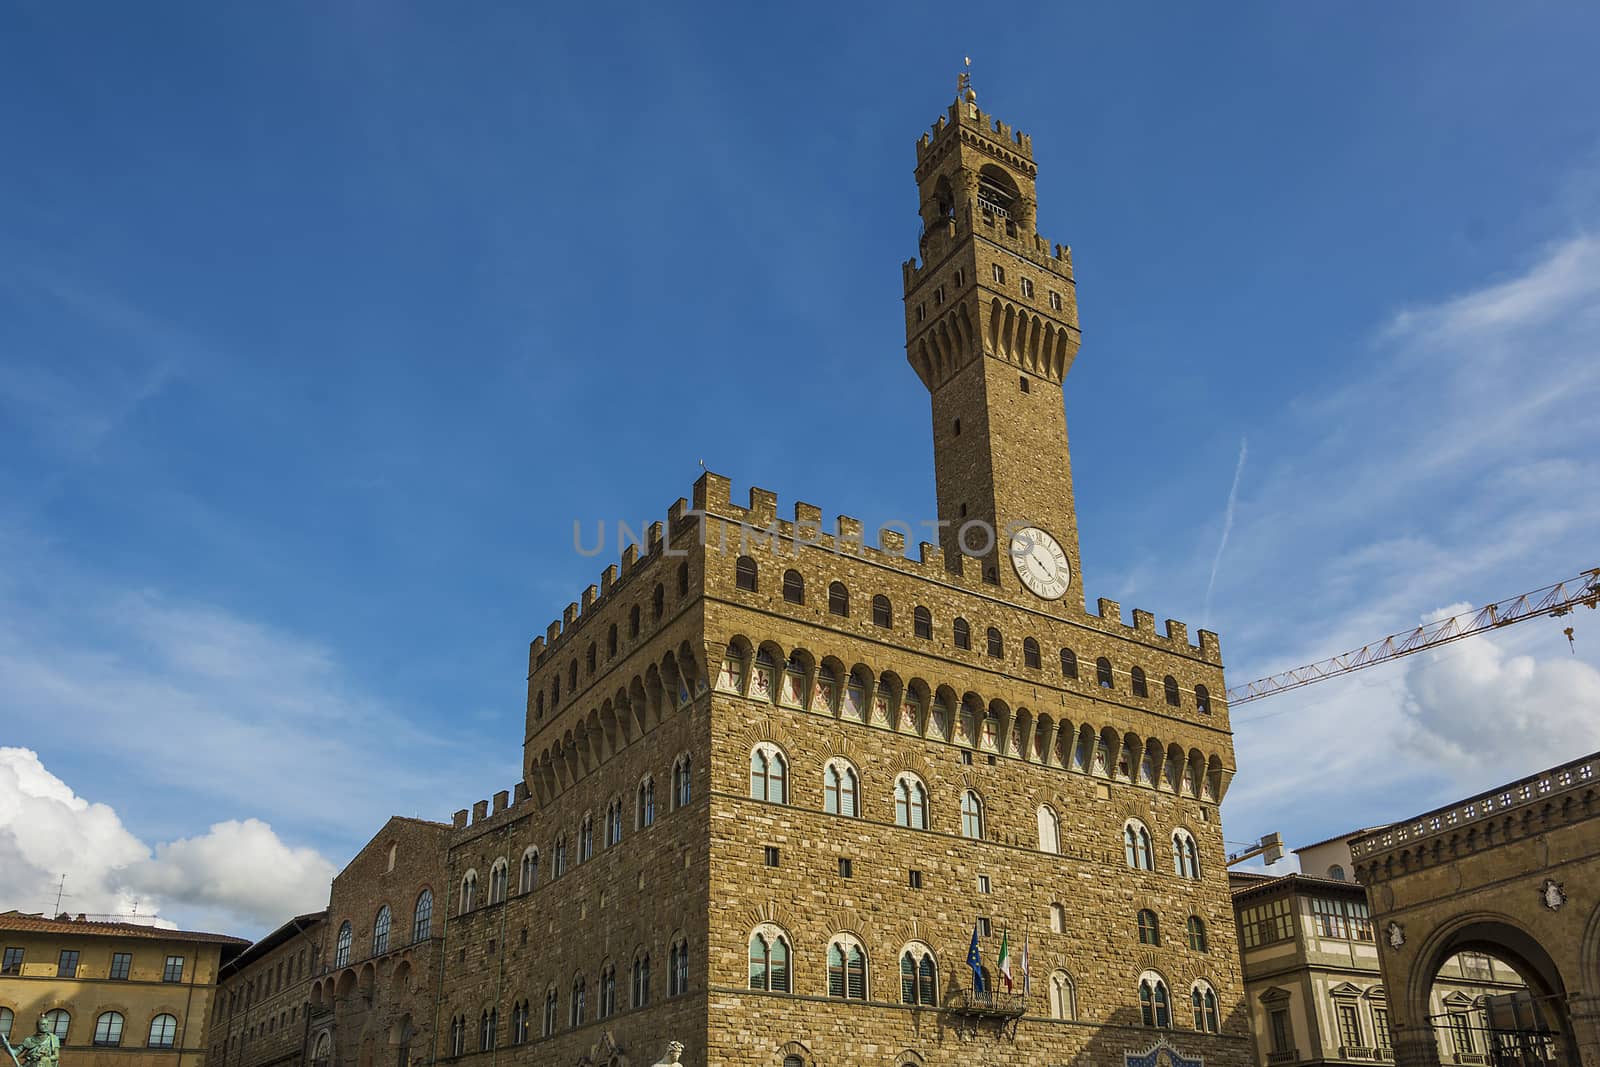 Palazzo Vecchio in Florence by rarrarorro